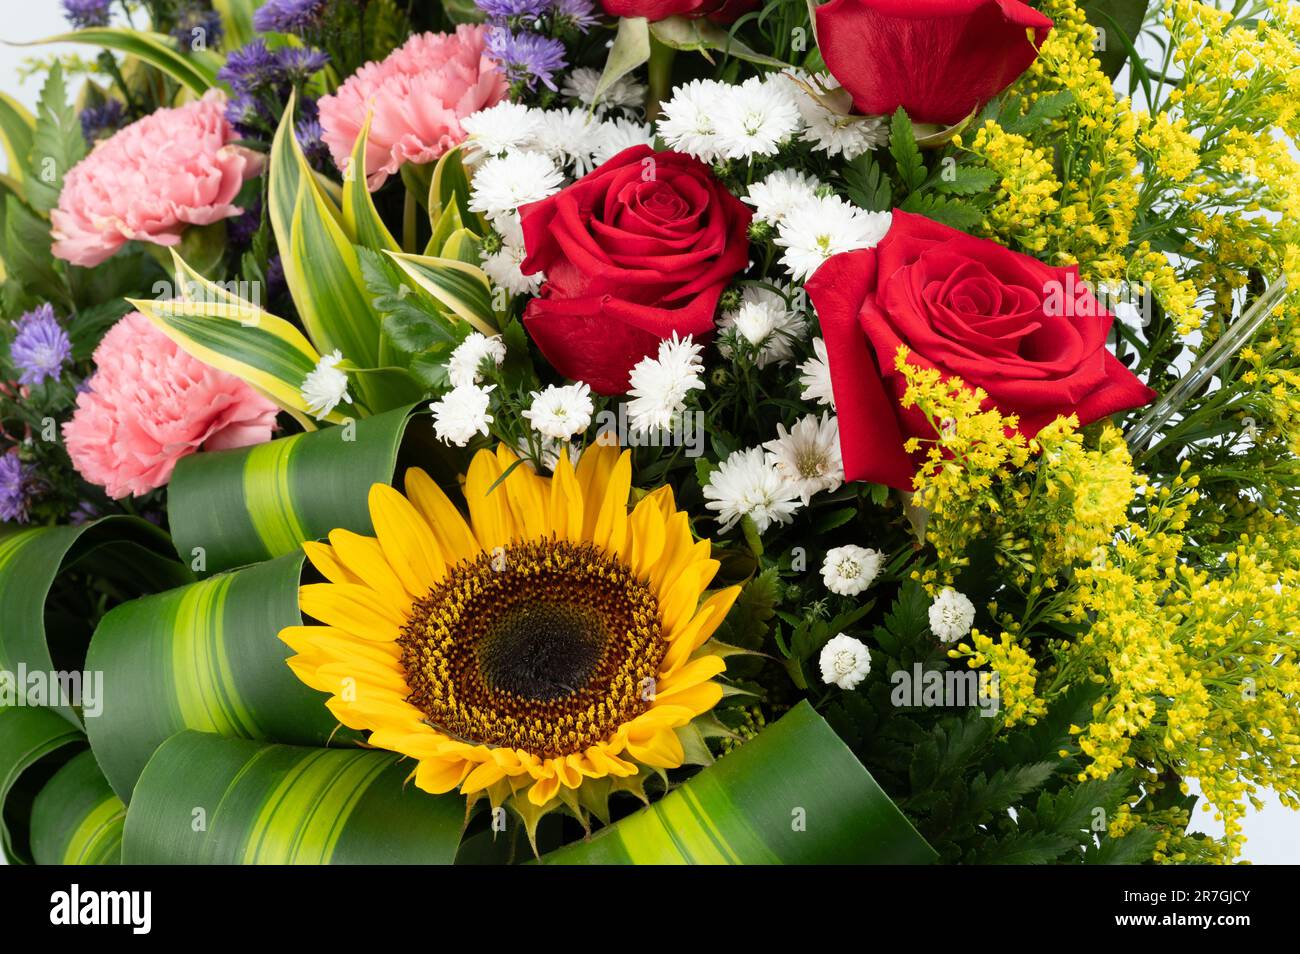 Farbenfroher Blumenstrauß mit Rosen und Sonnenblumen auf grünem Blatthintergrund Stockfoto